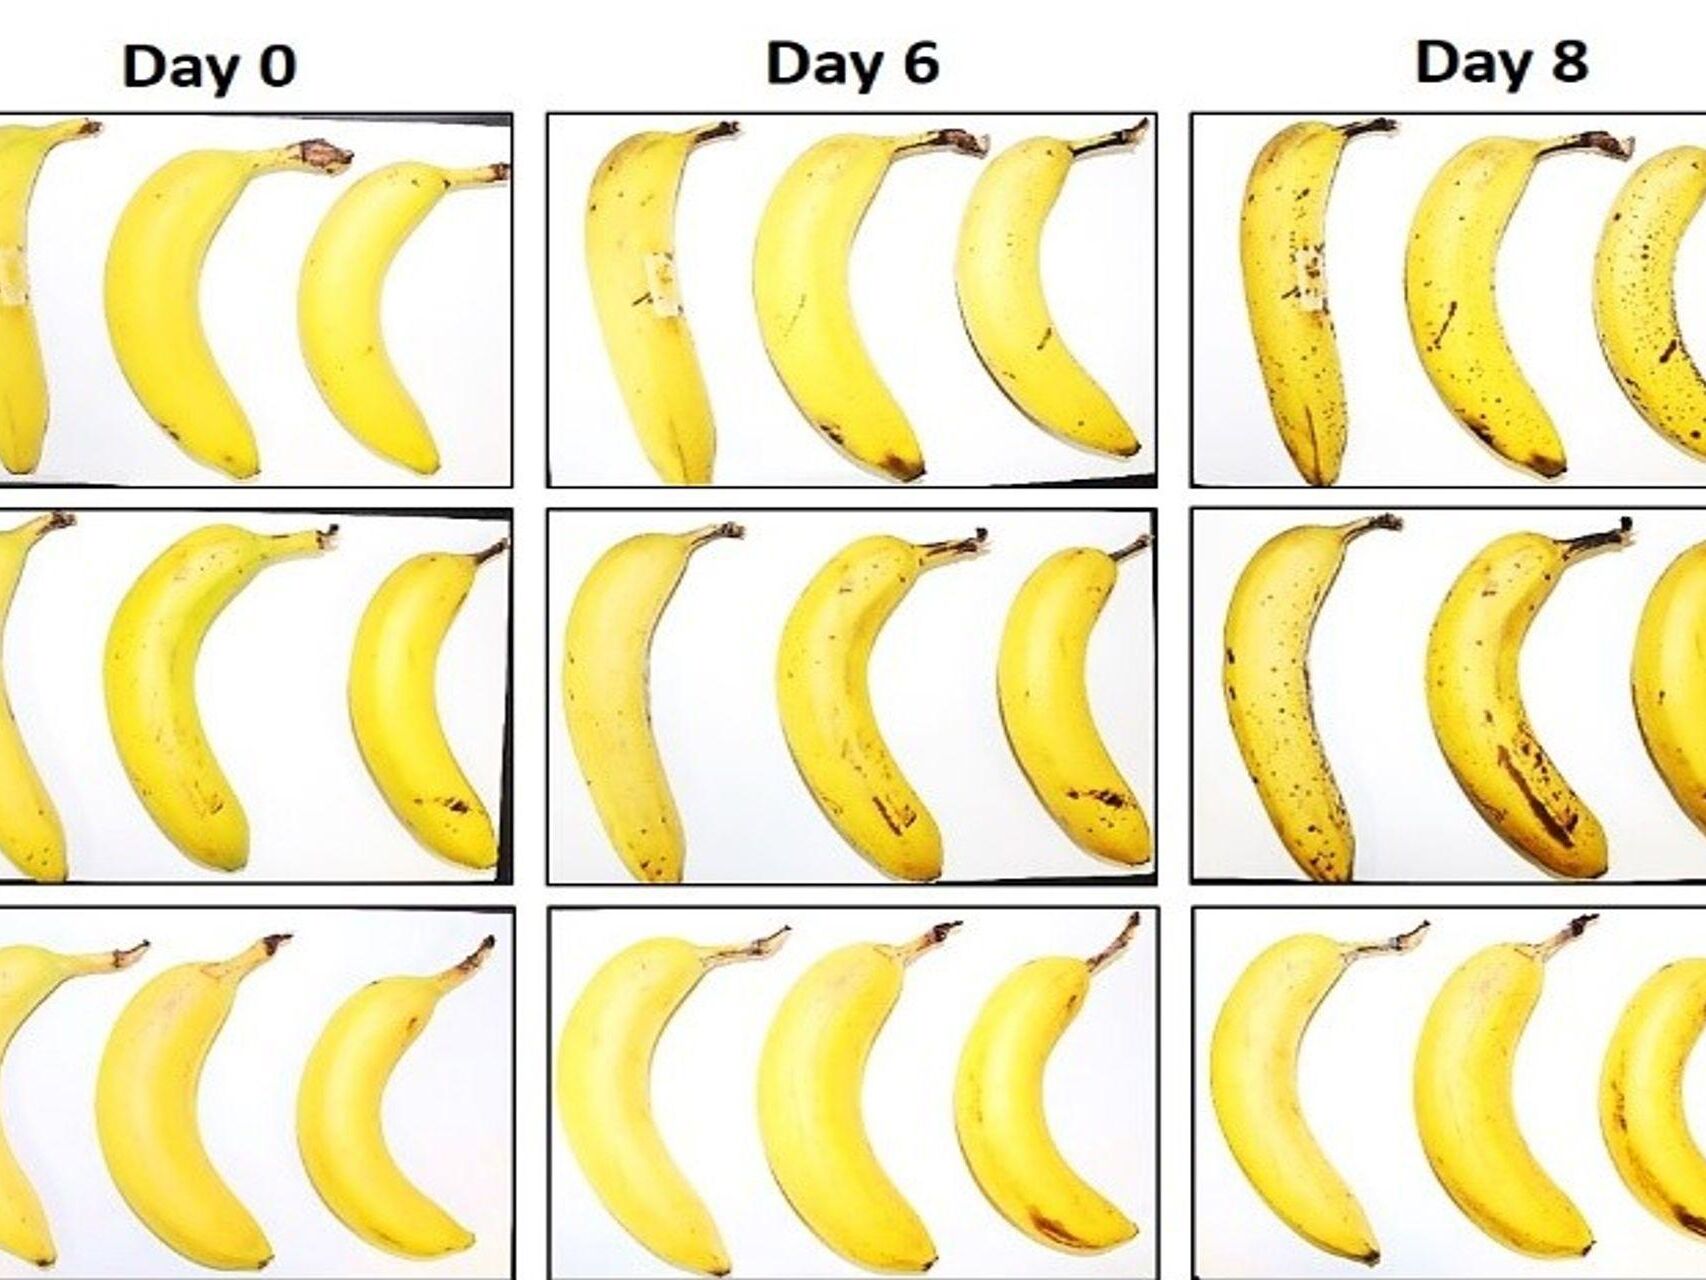 Trei banane supuse de EMPA și Lidl Elveția testului de conservare cu și fără ambalaj de celuloză fibroasă după zero, 6 și 8 zile